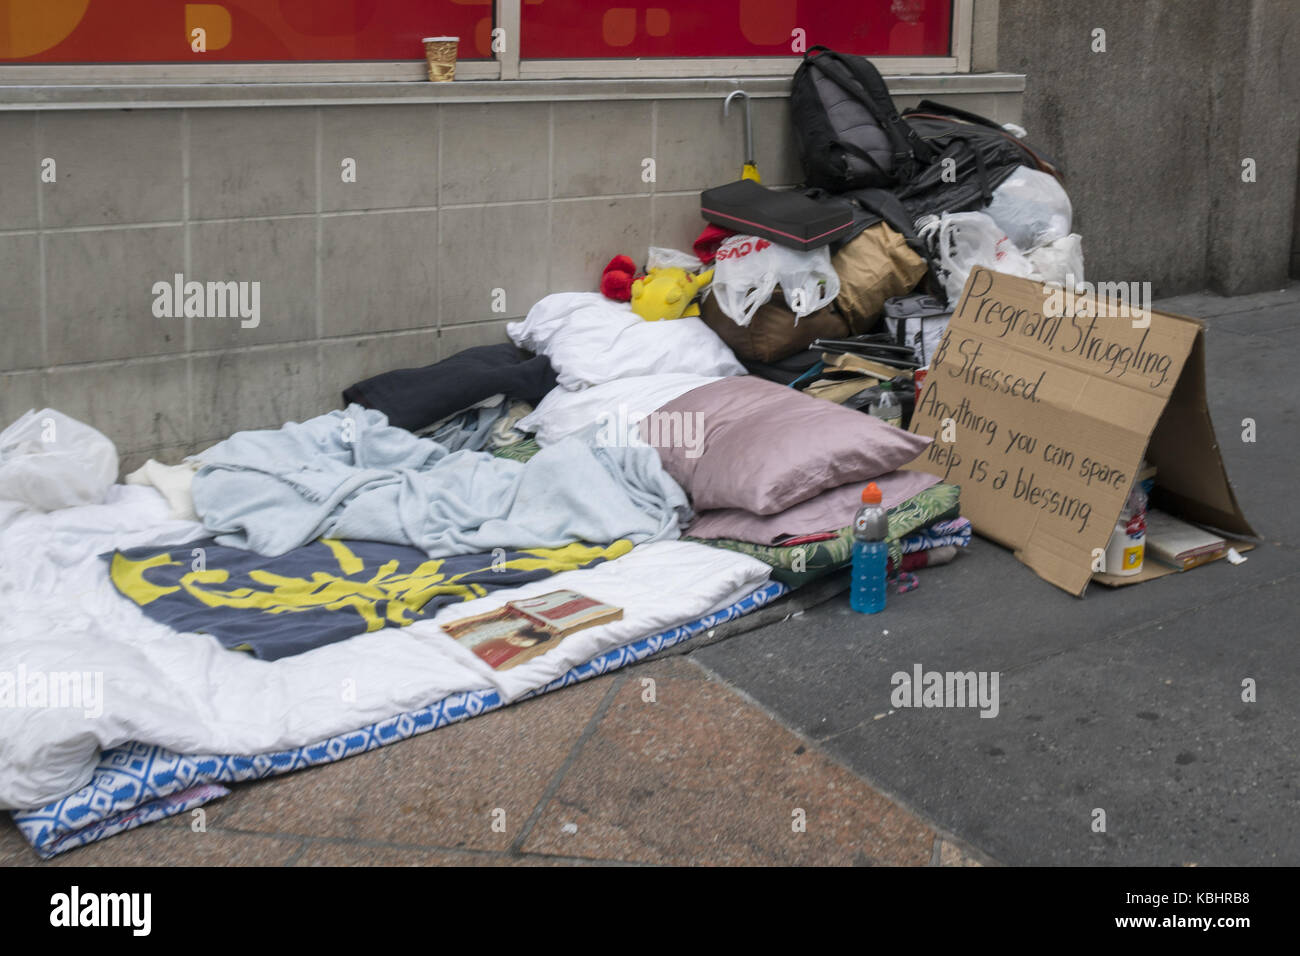 Trottoir lieu de nidification d'une femme sans-abri avec un panneau nous informant qu'elle est enceinte et a vraiment besoin d'aide. midtown Manhattan, New York. Banque D'Images